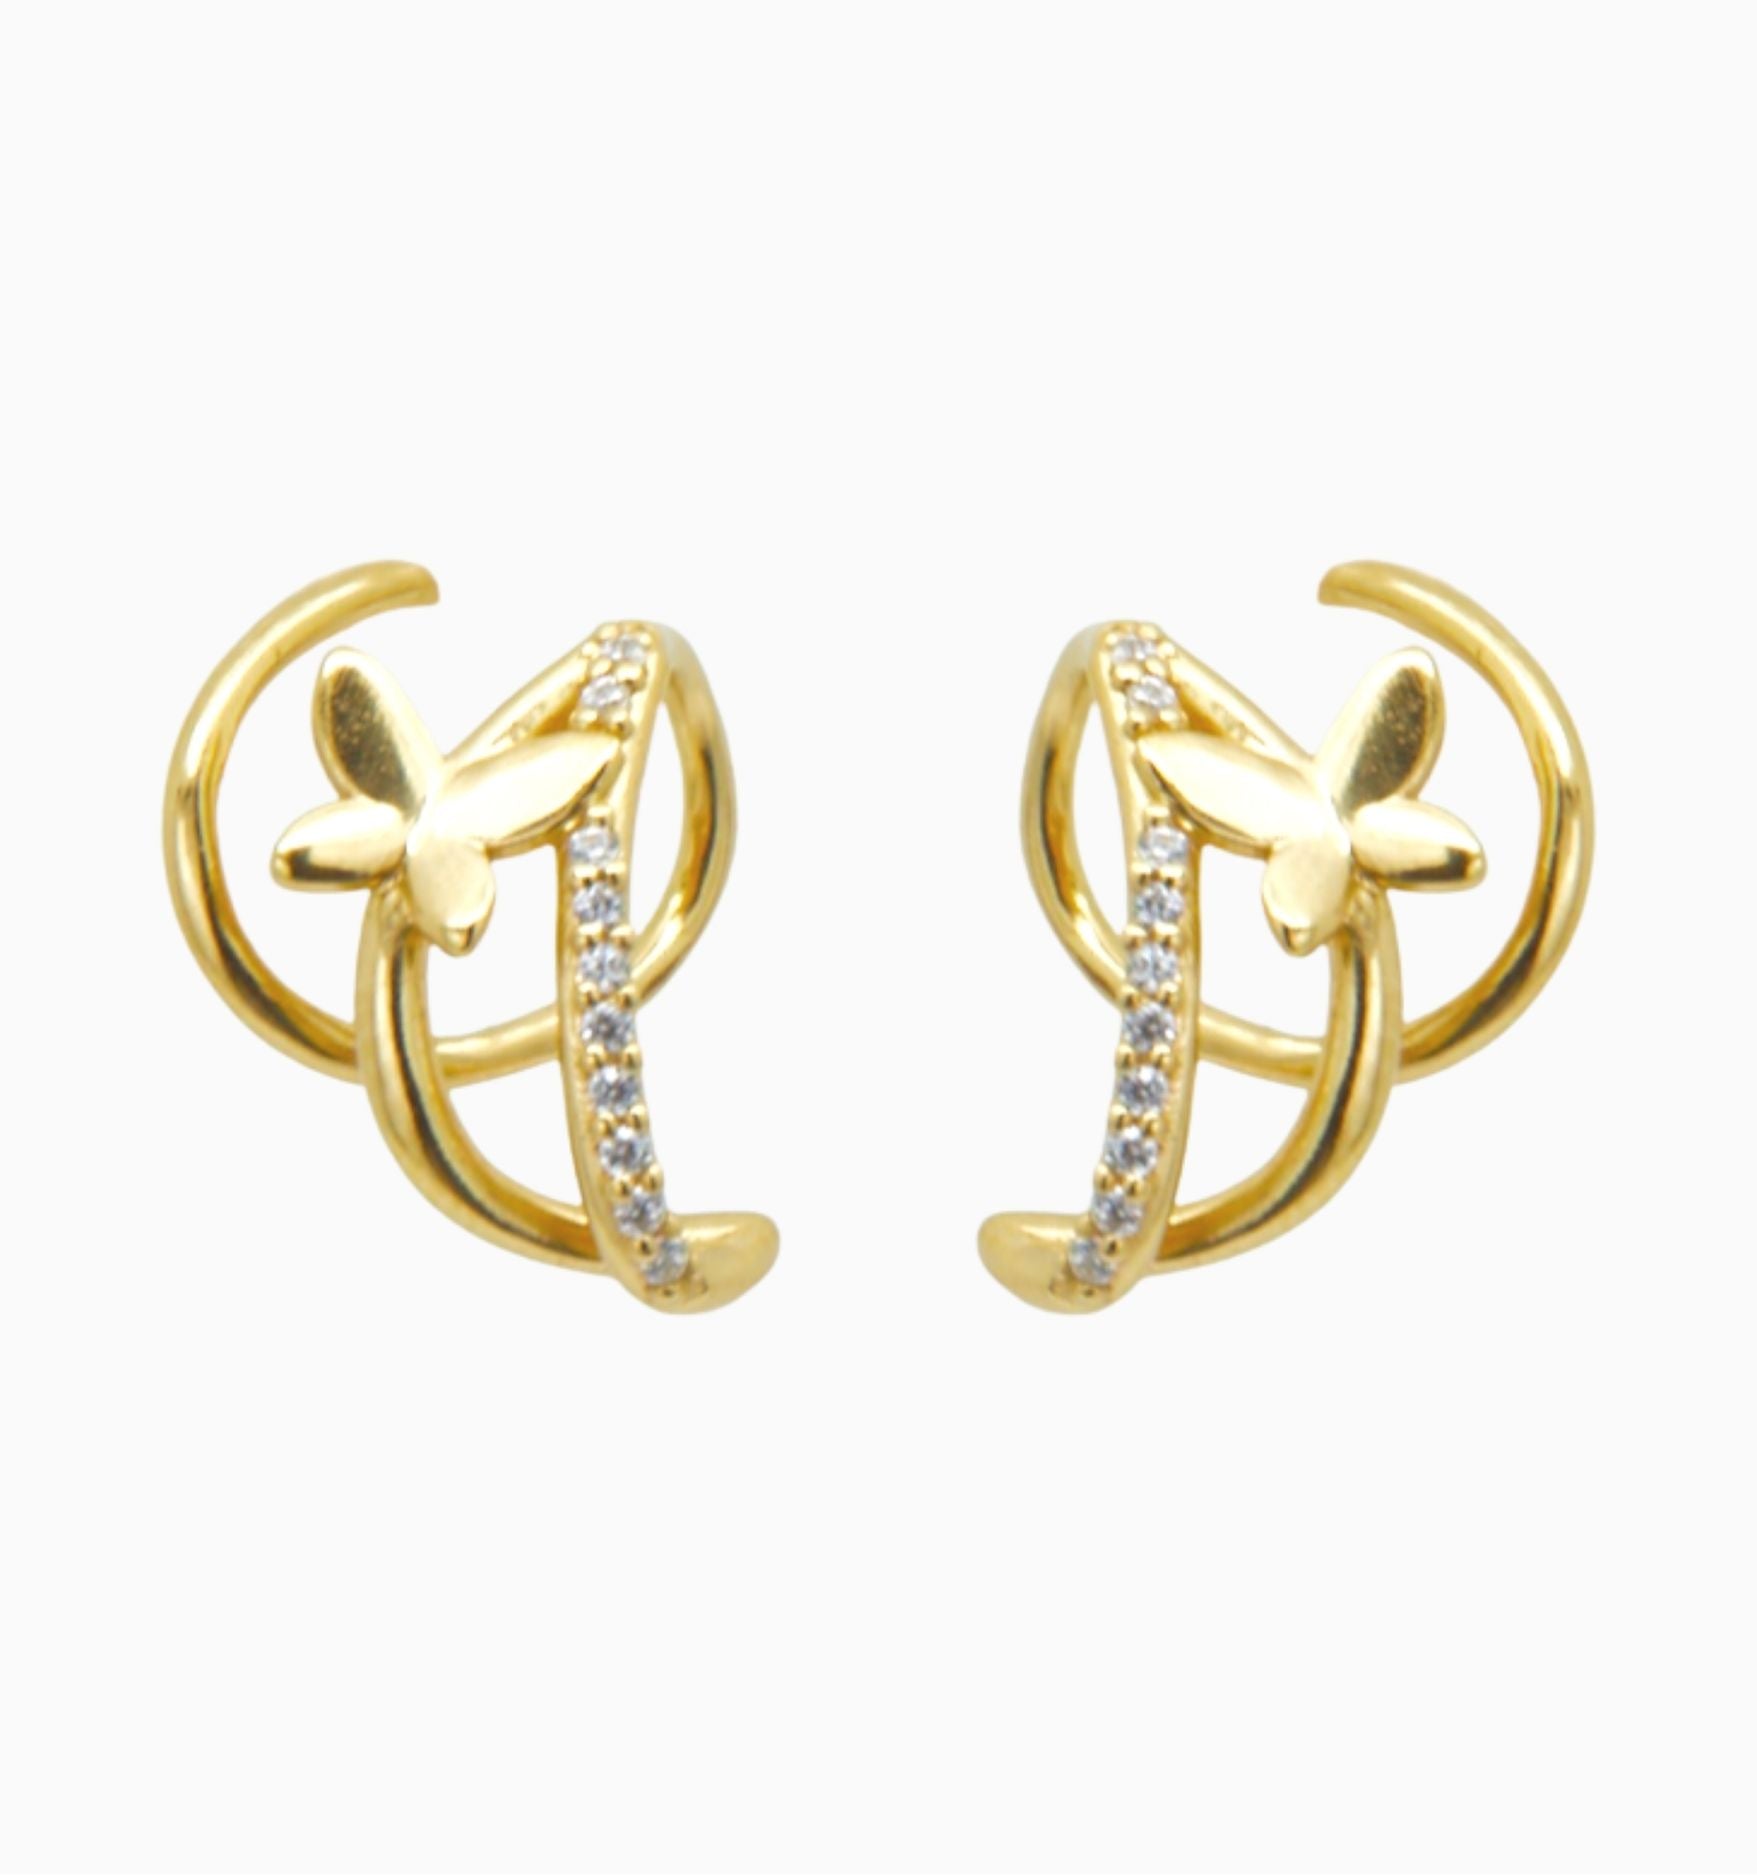 Double Twist Hoops Butterfly Pave Earrings - Illusion Earrings